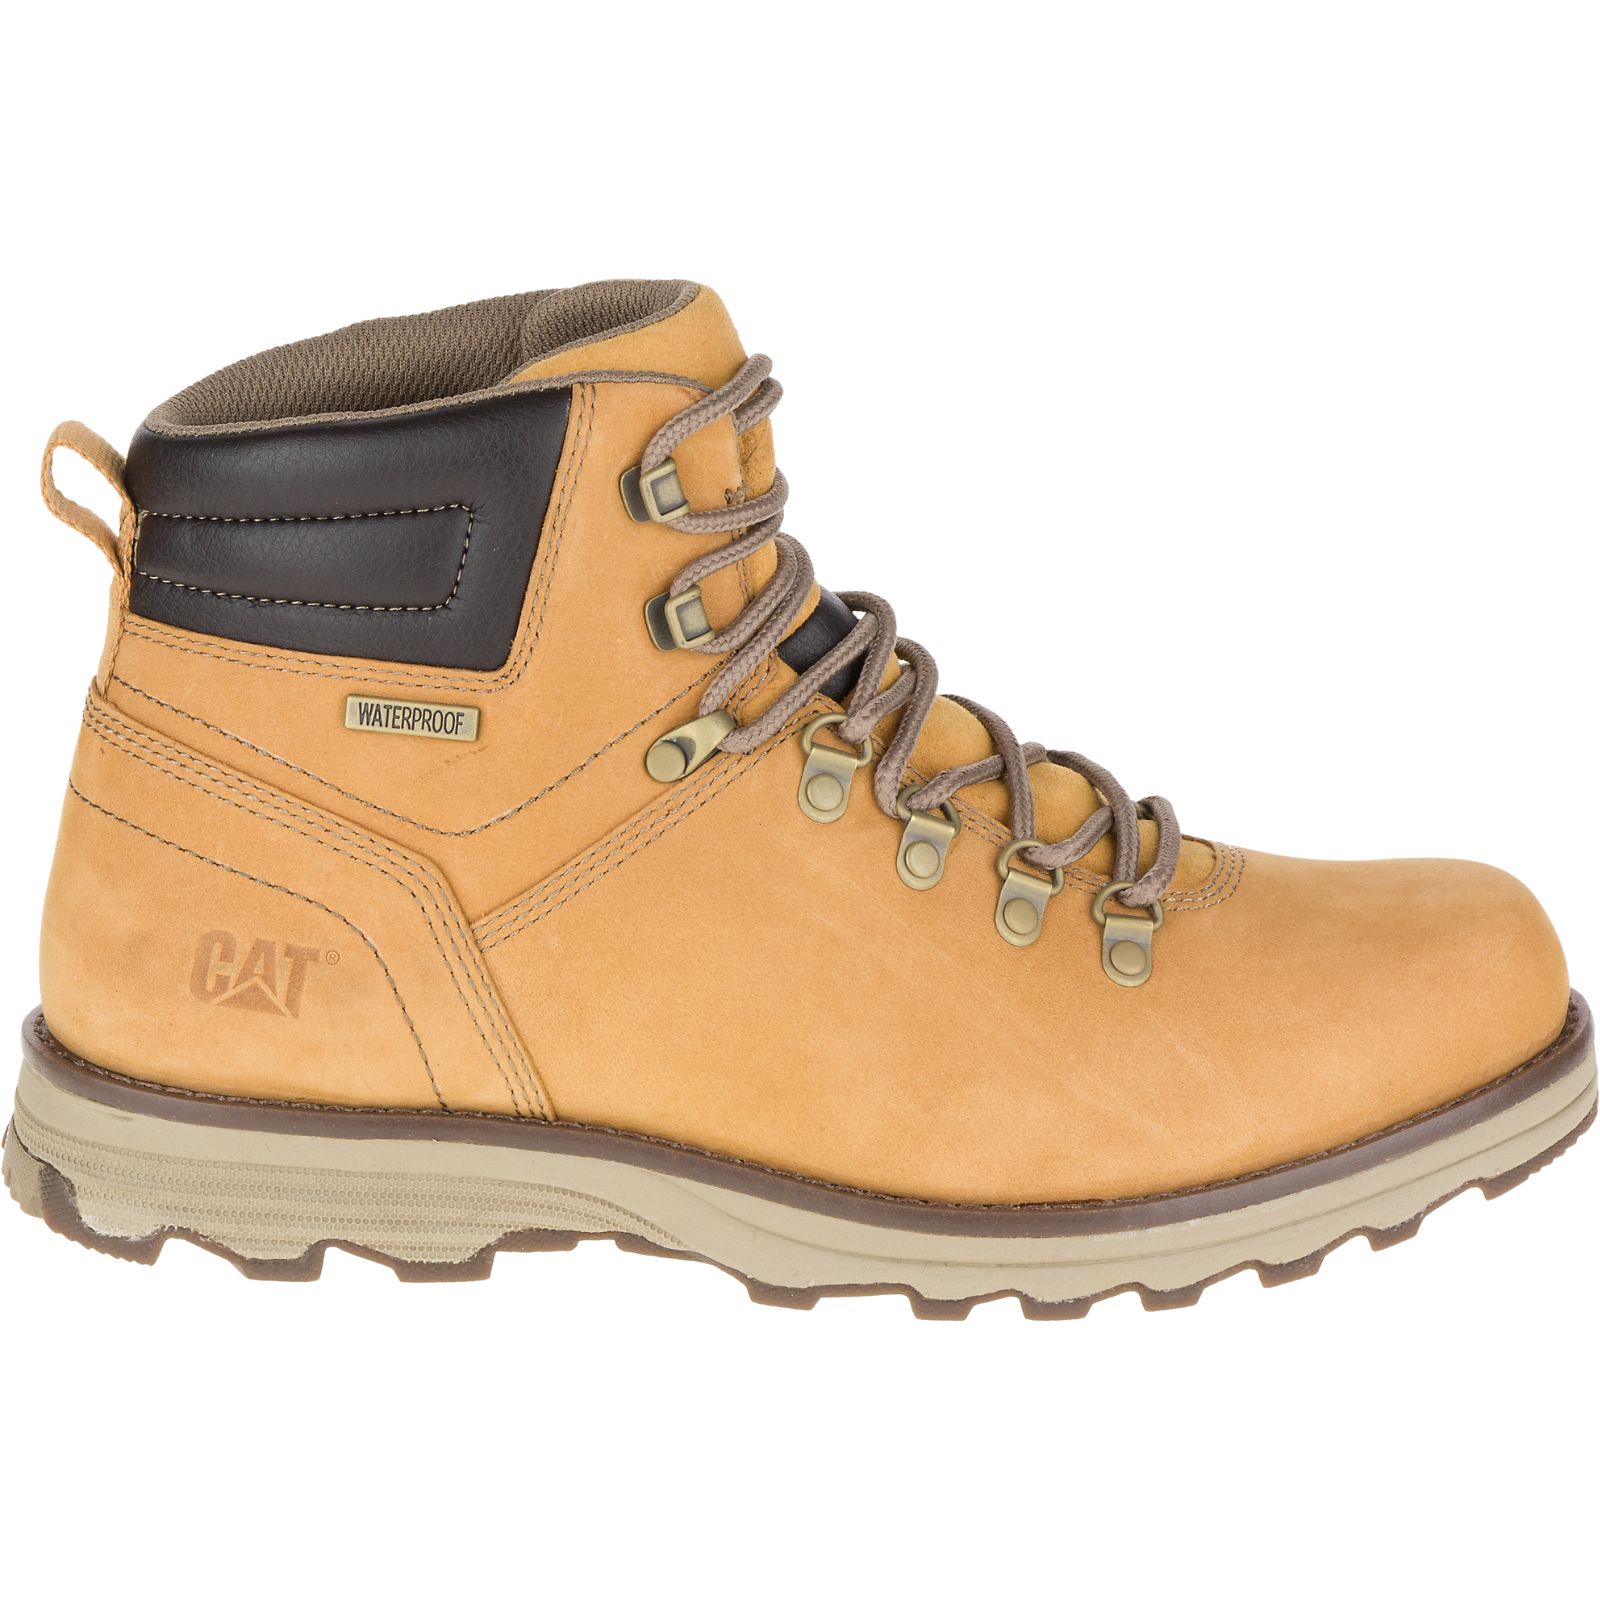 Orange Caterpillar Sire Waterproof Men's Work Boots | Cat-586317